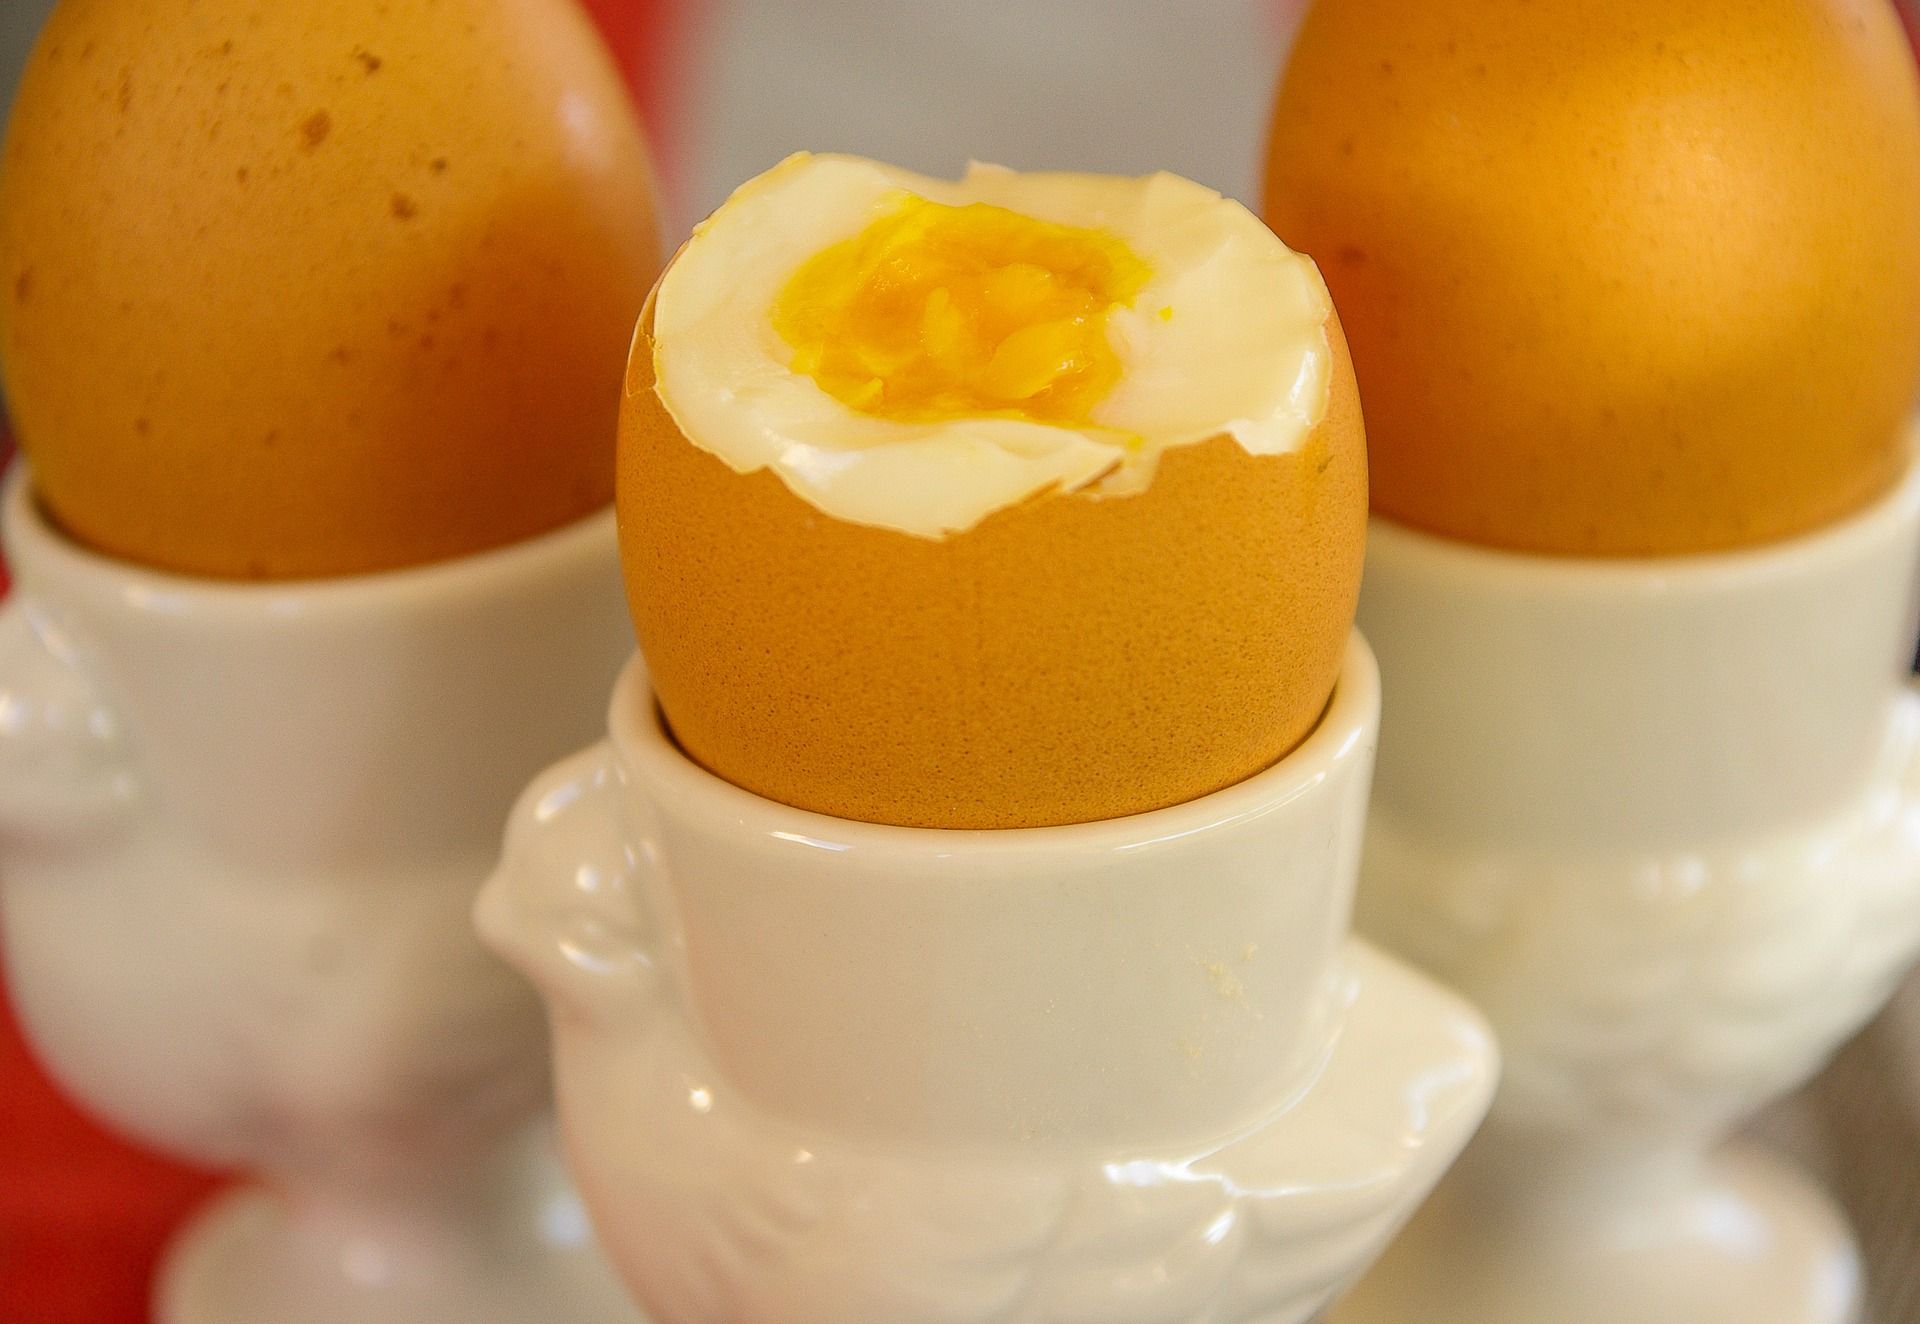 Jajka na twardo. Na zdjęciu widzimy trzy jajka w porcelanowych podstawkach. Jedno jest przekrojone. 